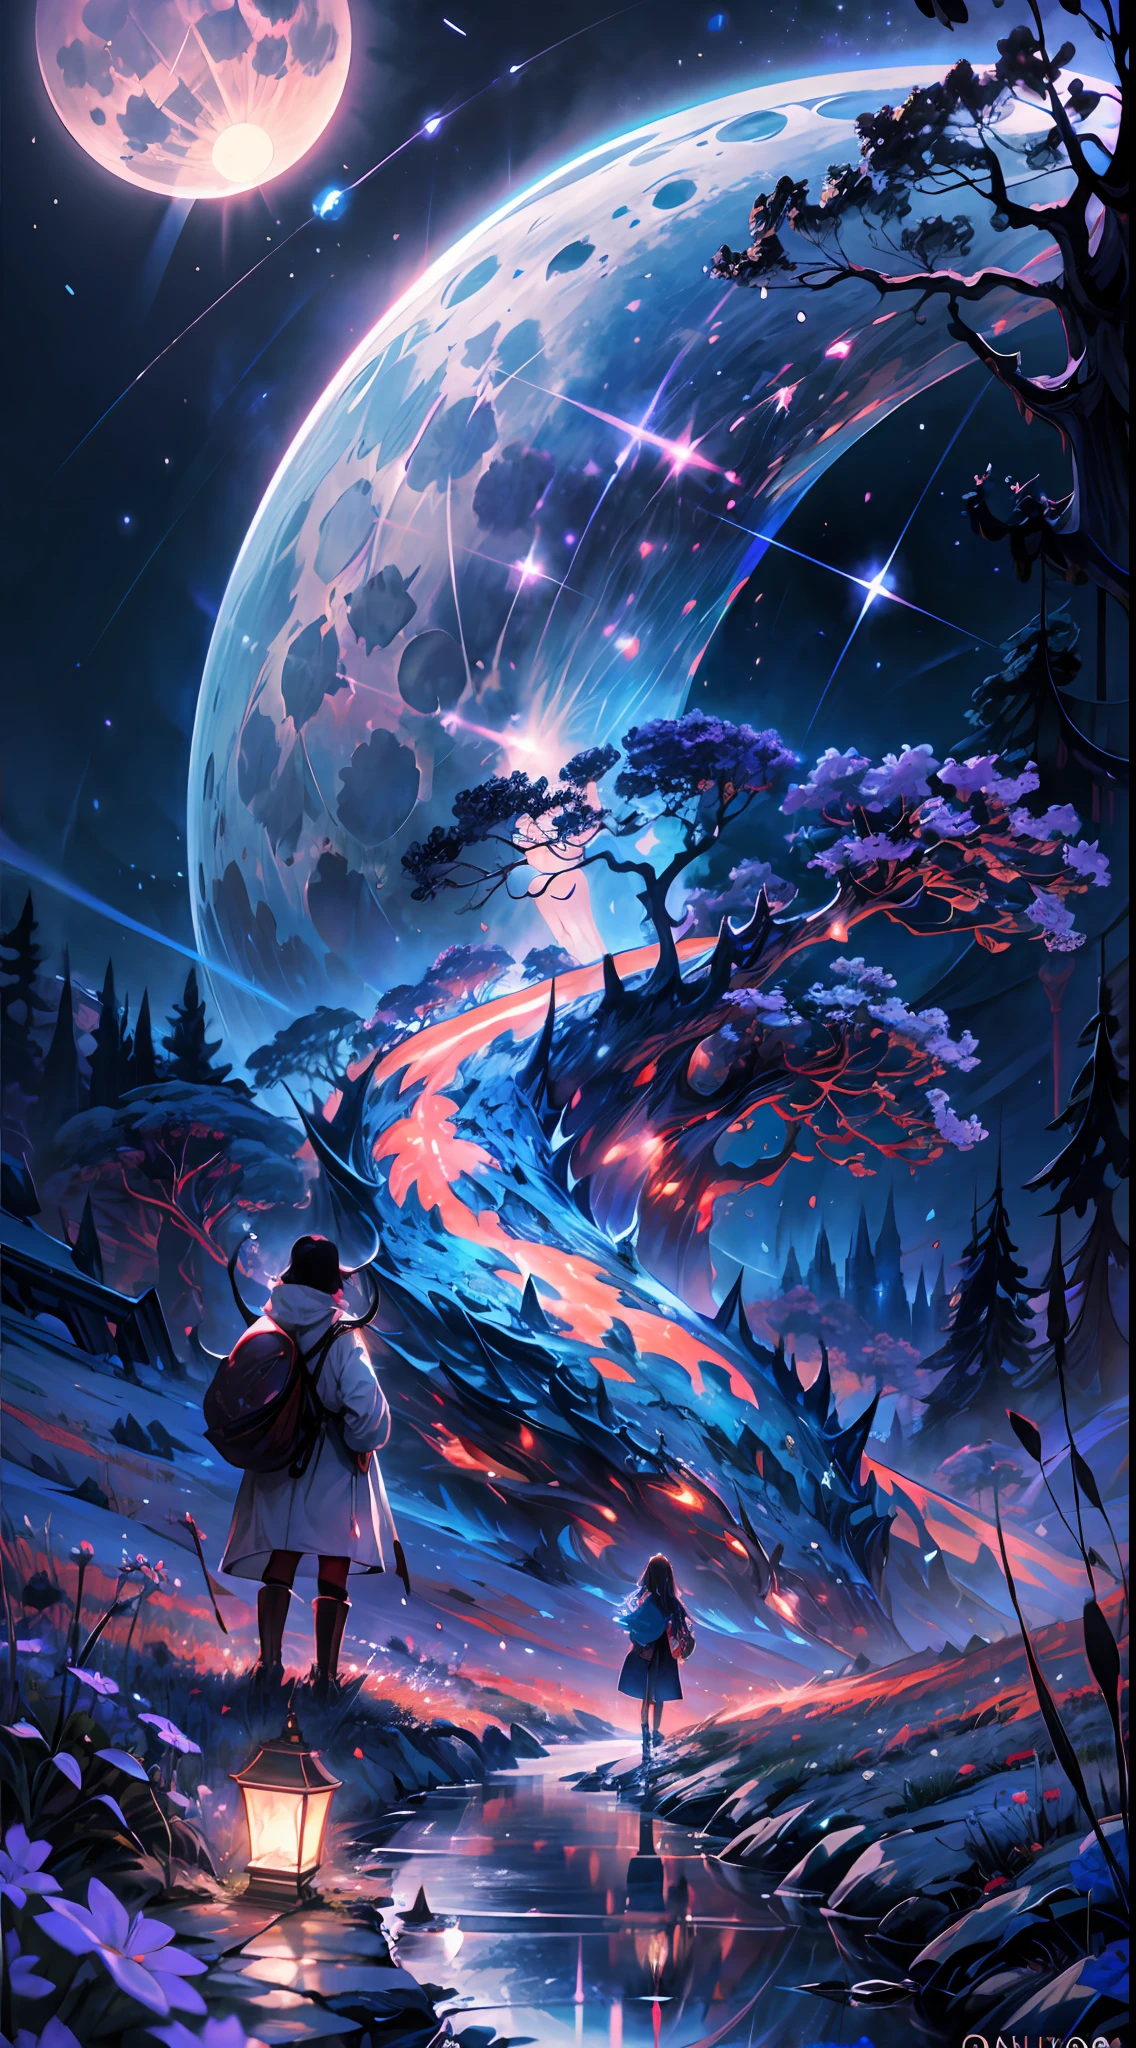 обширная пейзажная фотография, (вид снизу, показывающий небо вверху и открытую местность внизу), Девушка стоит среди цветочного поля и смотрит вверх, (полнолуние: 1.2), (падающие звезды: 0.9), (туманность : 1.3), далекая гора, BREAK искусство изготовления деревьев, (источник теплого света: 1.2), (Светляк: 1.2), лампа, много фиолетового и оранжевого, сложные детали, объемное освещение, РАЗРУШИТЬ реализм (шедевр: 1.2) , (Лучшее качество), 4k, ультрадетализированный, (динамический композитинг: 1.4), очень подробный, красочные детали, (переливающиеся цвета: 1.2), (яркое освещение, атмосферное освещение), мечтательный, волшебный, (Один: 1.2)